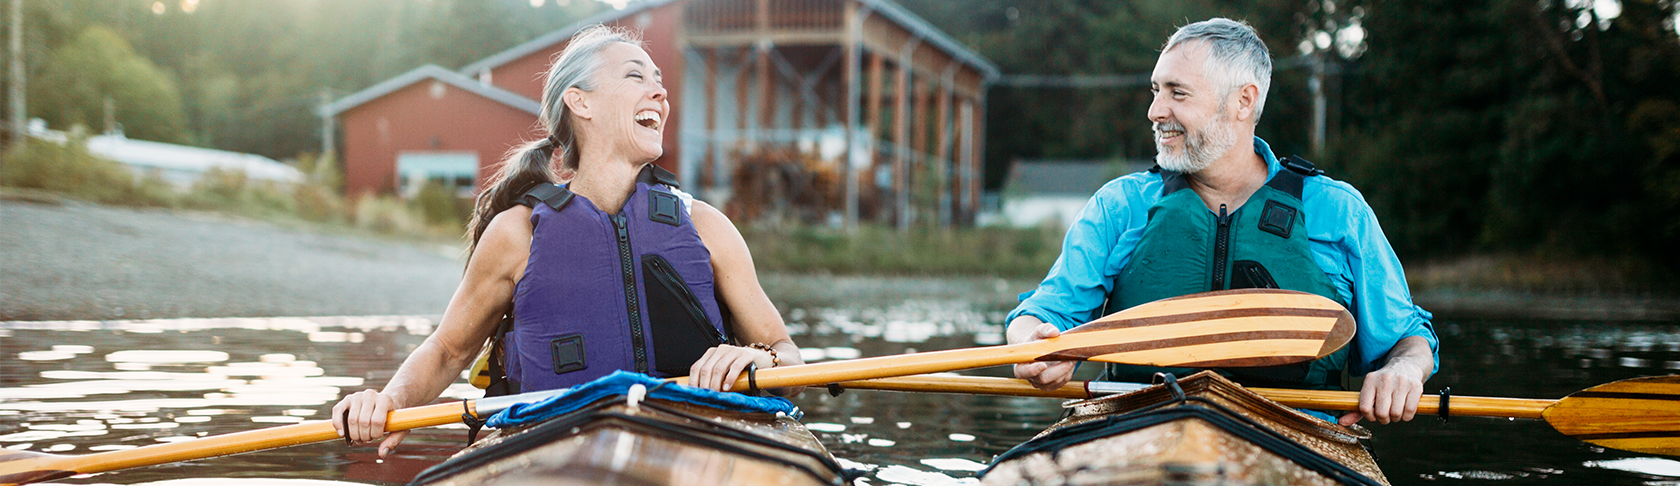 Due persone in età di pensionamento sono sedute in due canoe e si sorridono a vicenda.